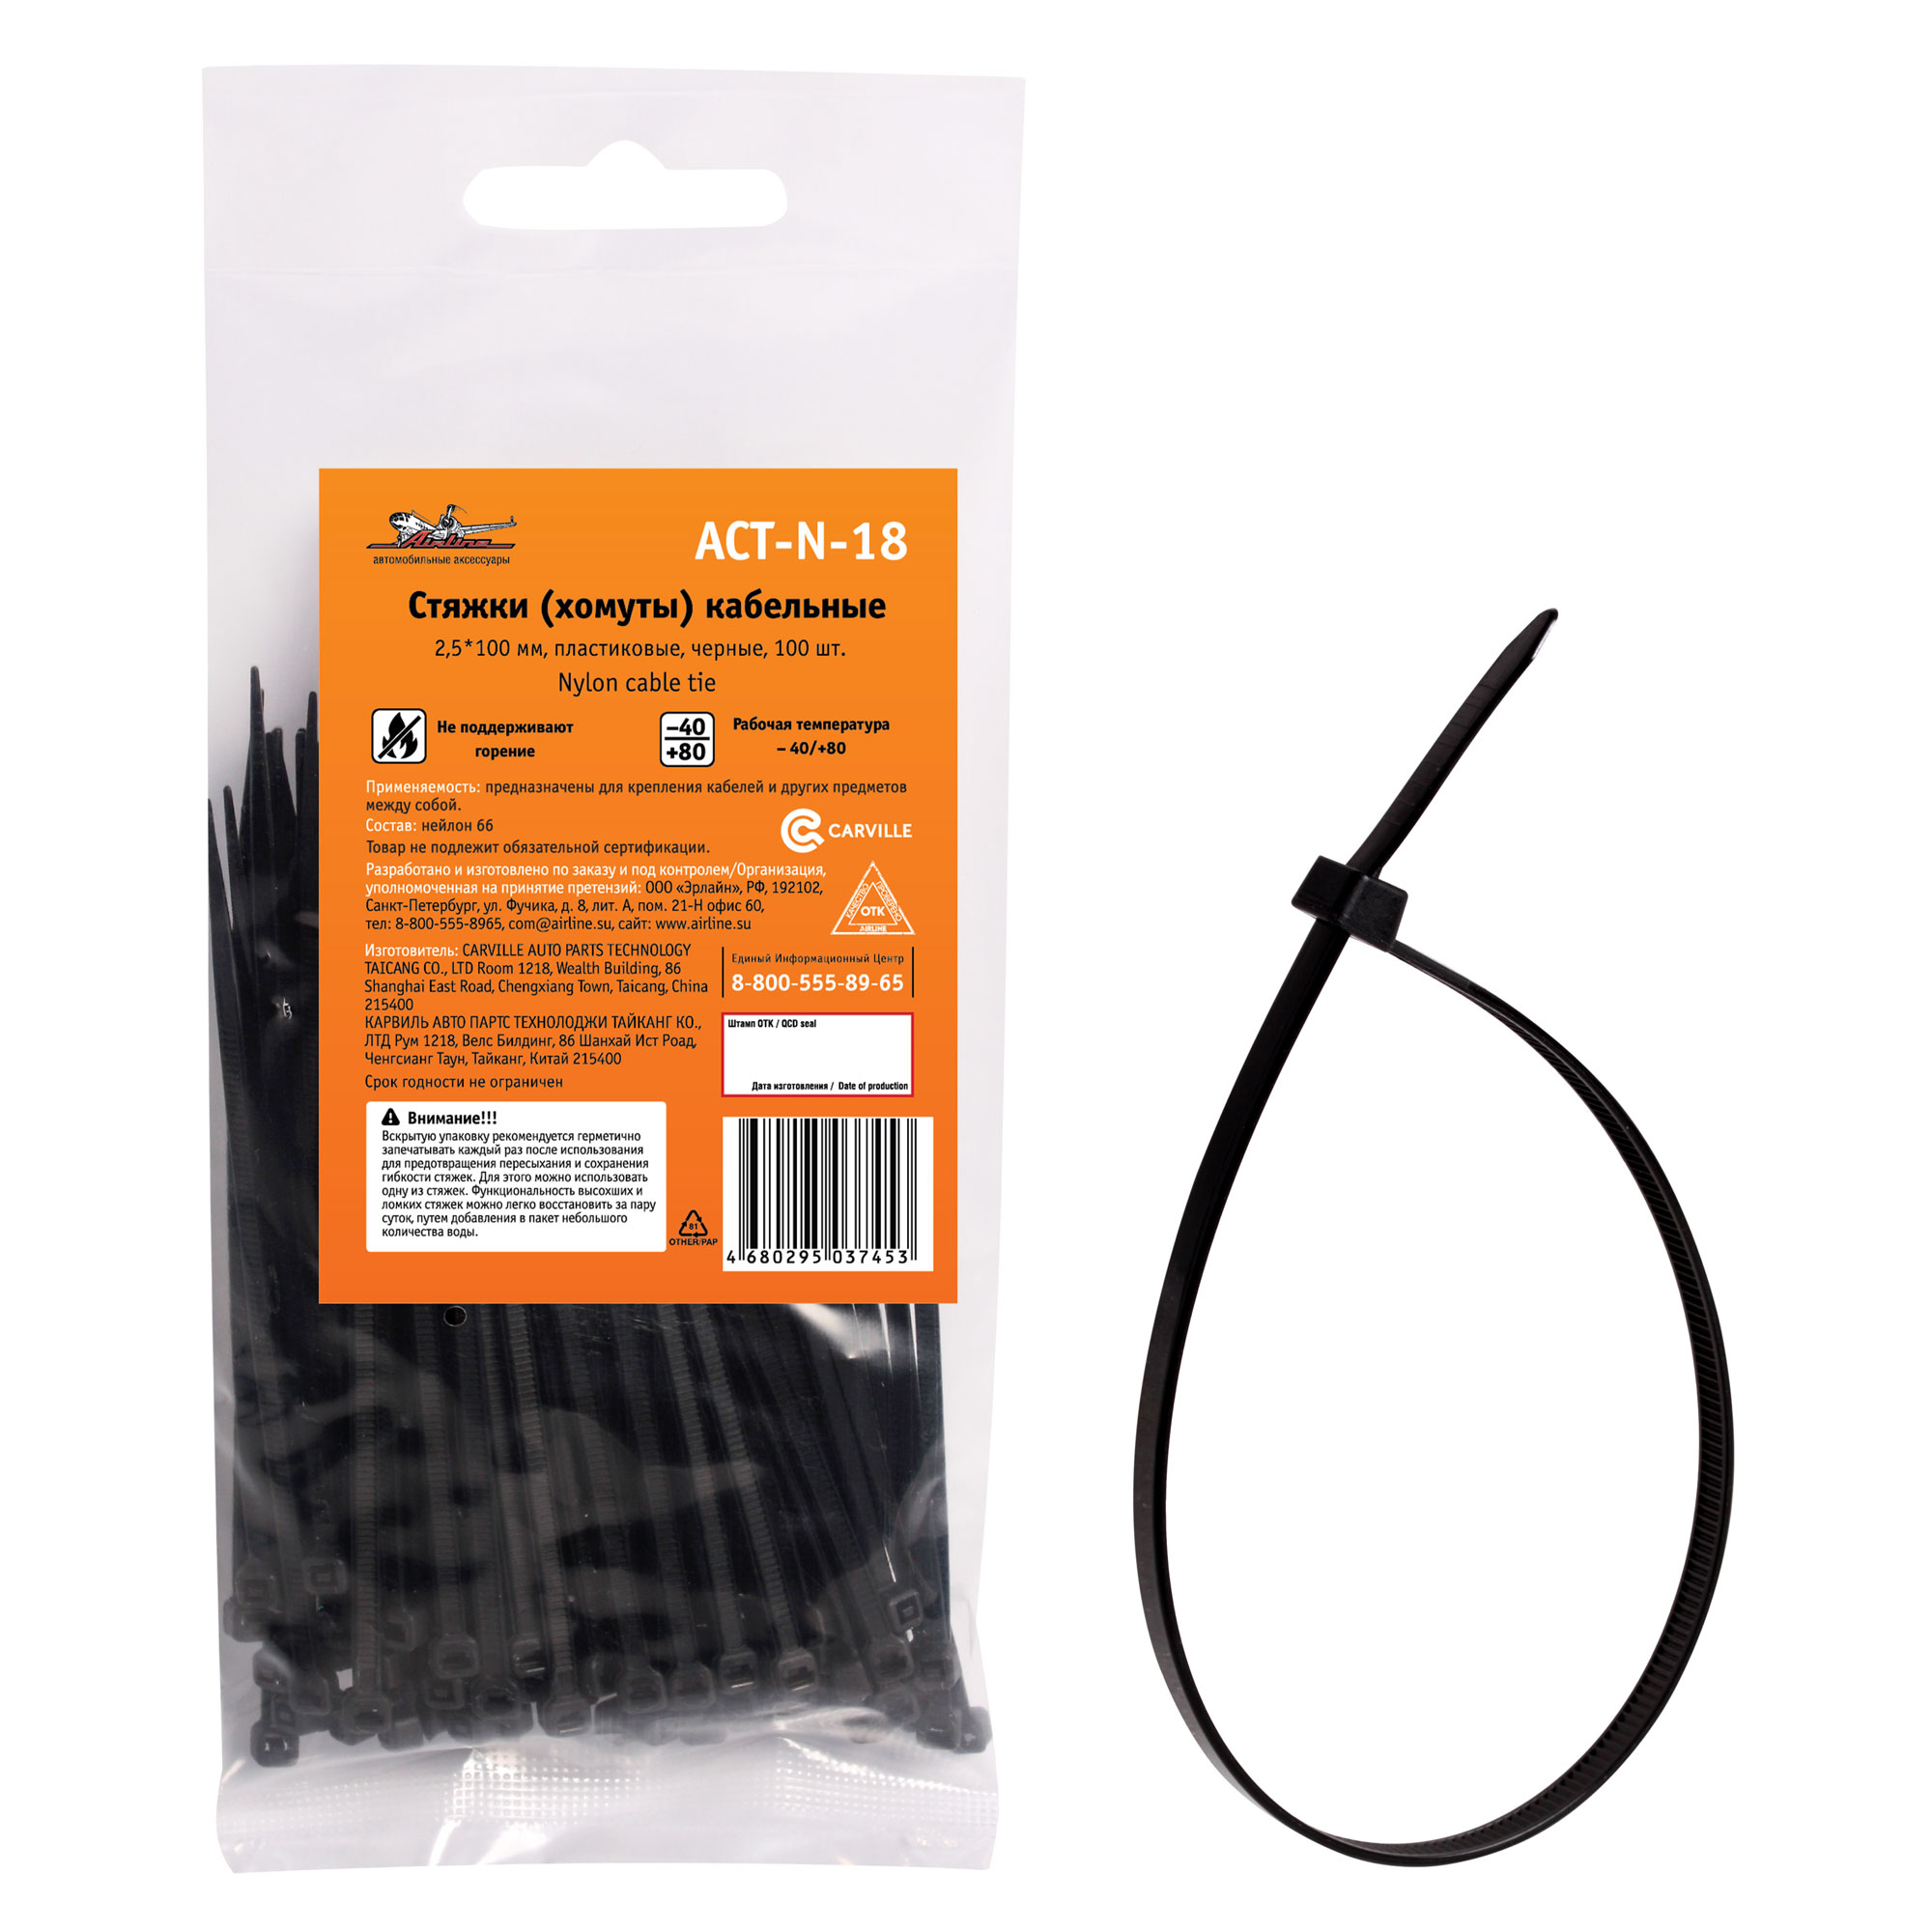 Стяжки (хомуты) кабельные 2,5*100 мм, пластиковые, черные, 100 шт. - AIRLINE ACT-N-18